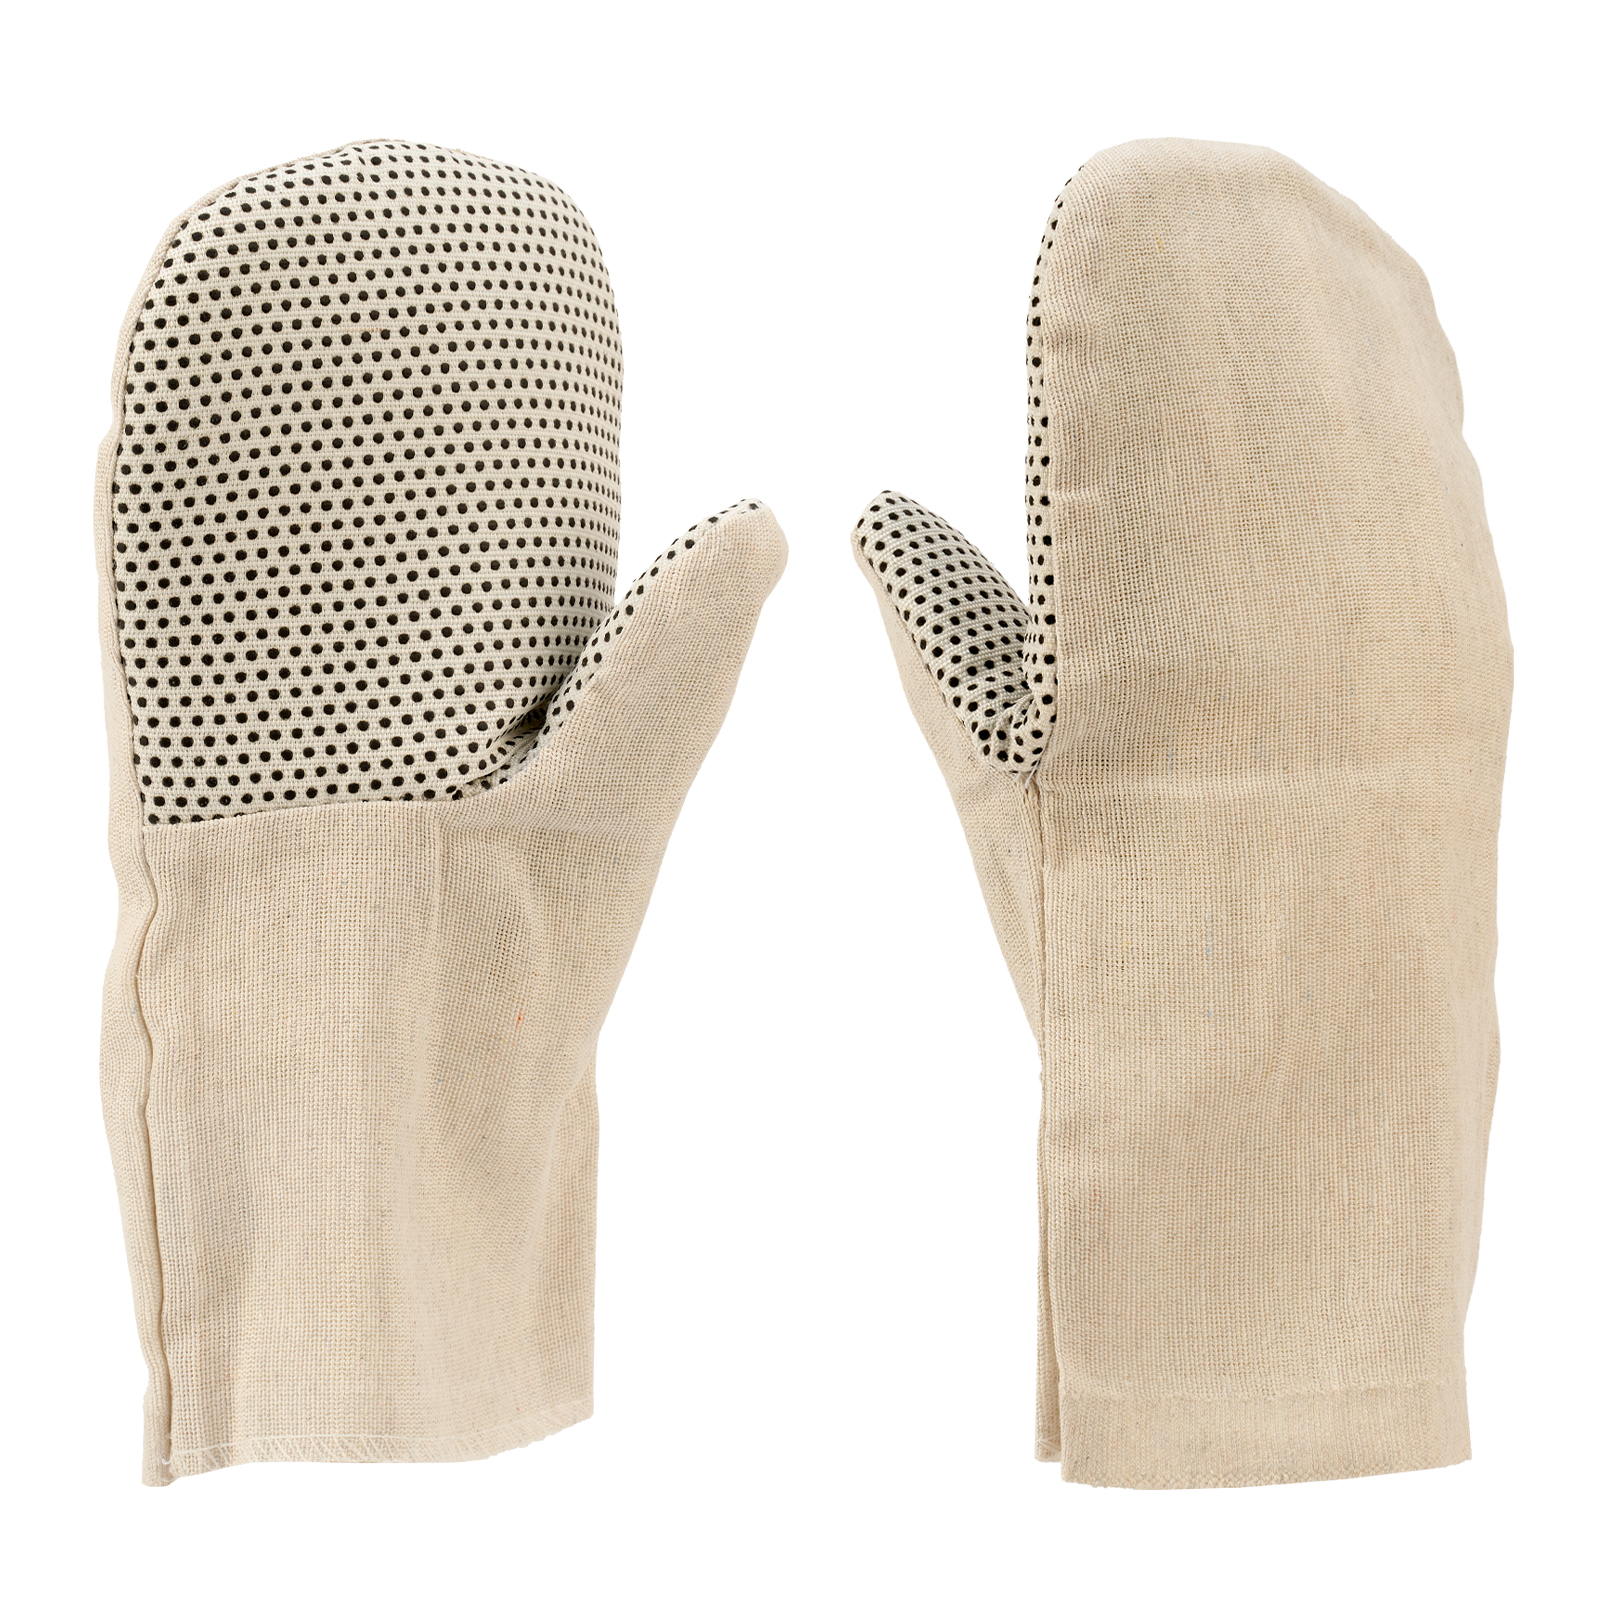 рукавицы специальные х б утеплённые искусственный мех 2 размер россия сибртех Рукавицы рабочие СИБРТЕХ 68146